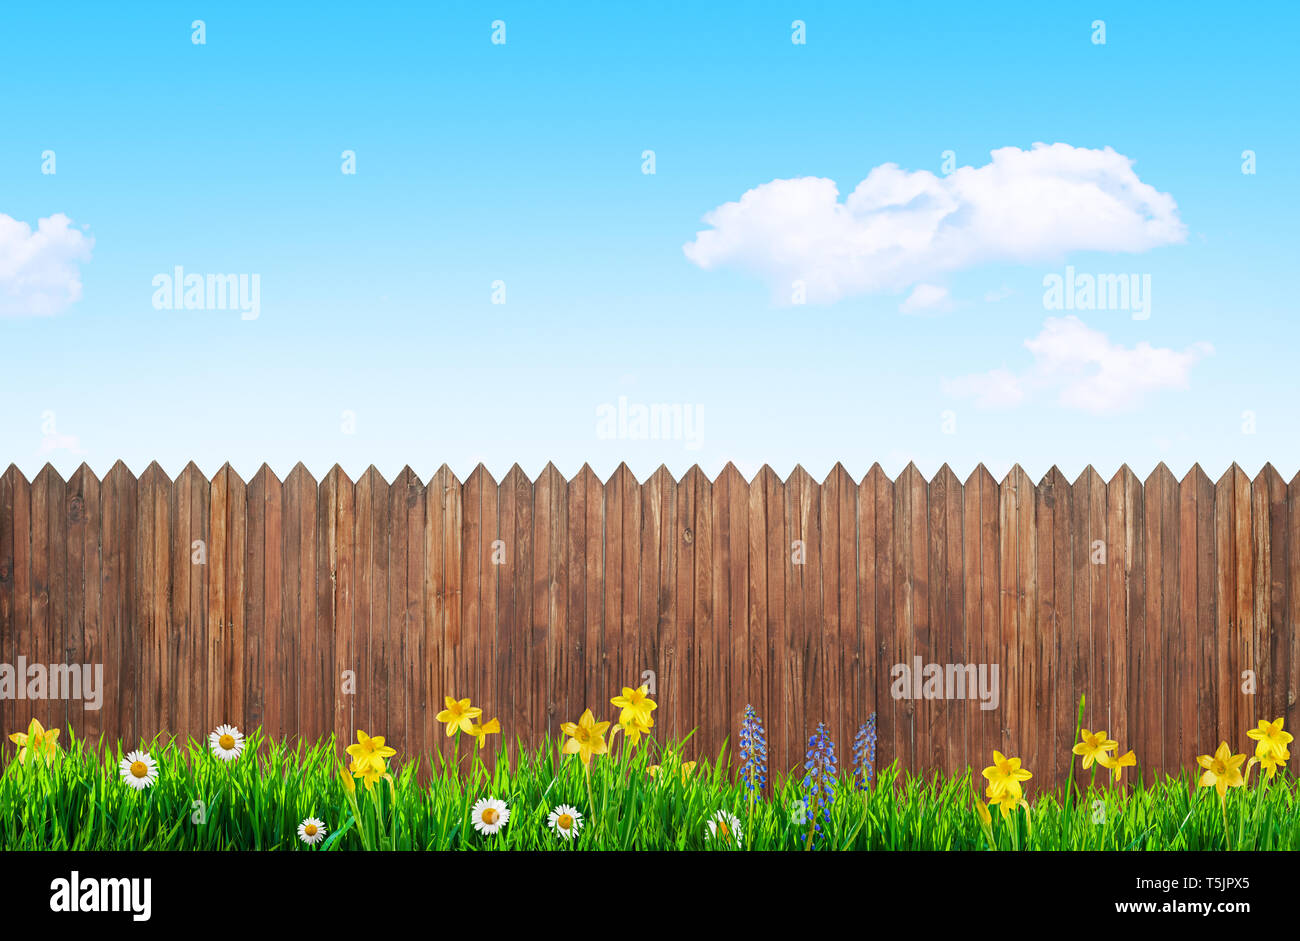 Frühling Blumen und Holz Garten Zaun Hintergrund Stockfoto